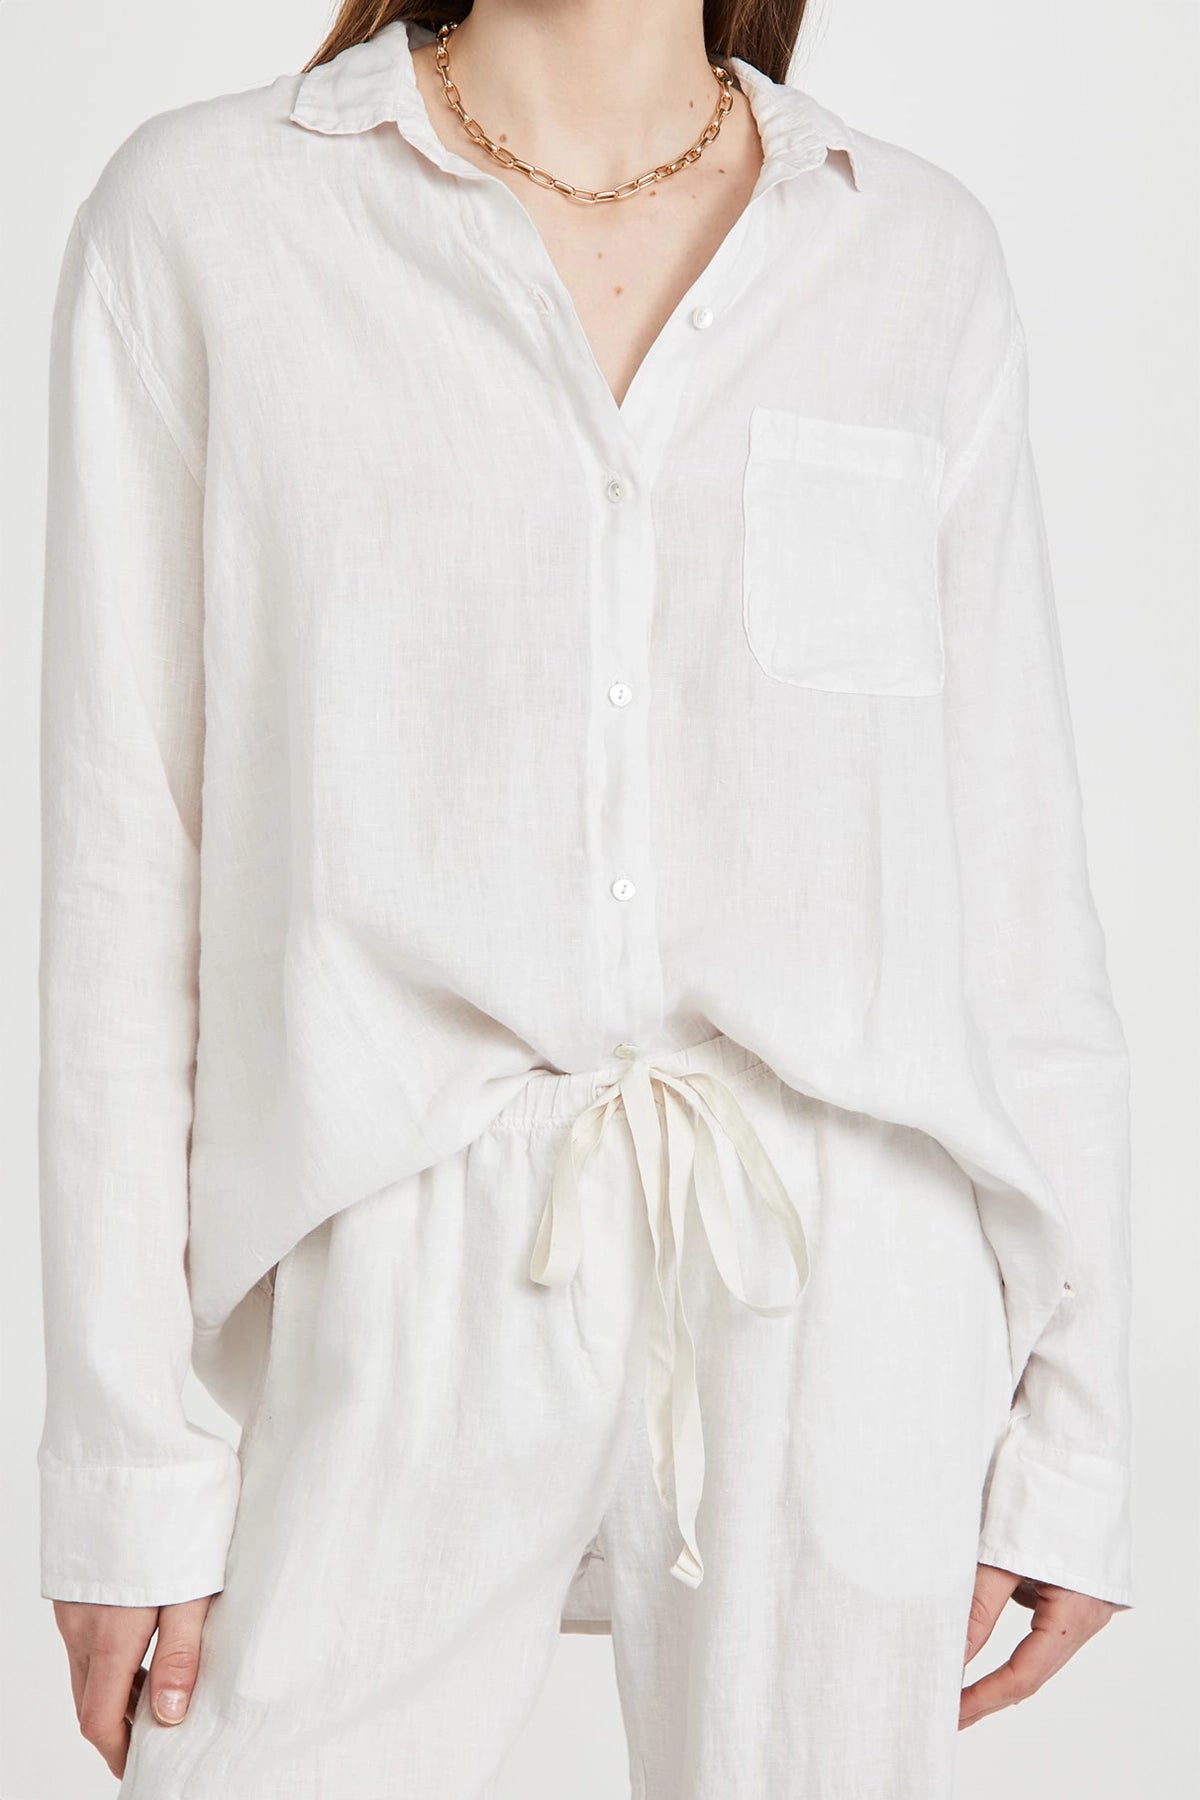 Velvet by Jenny Graham Mulholland Woven Linen Shirt